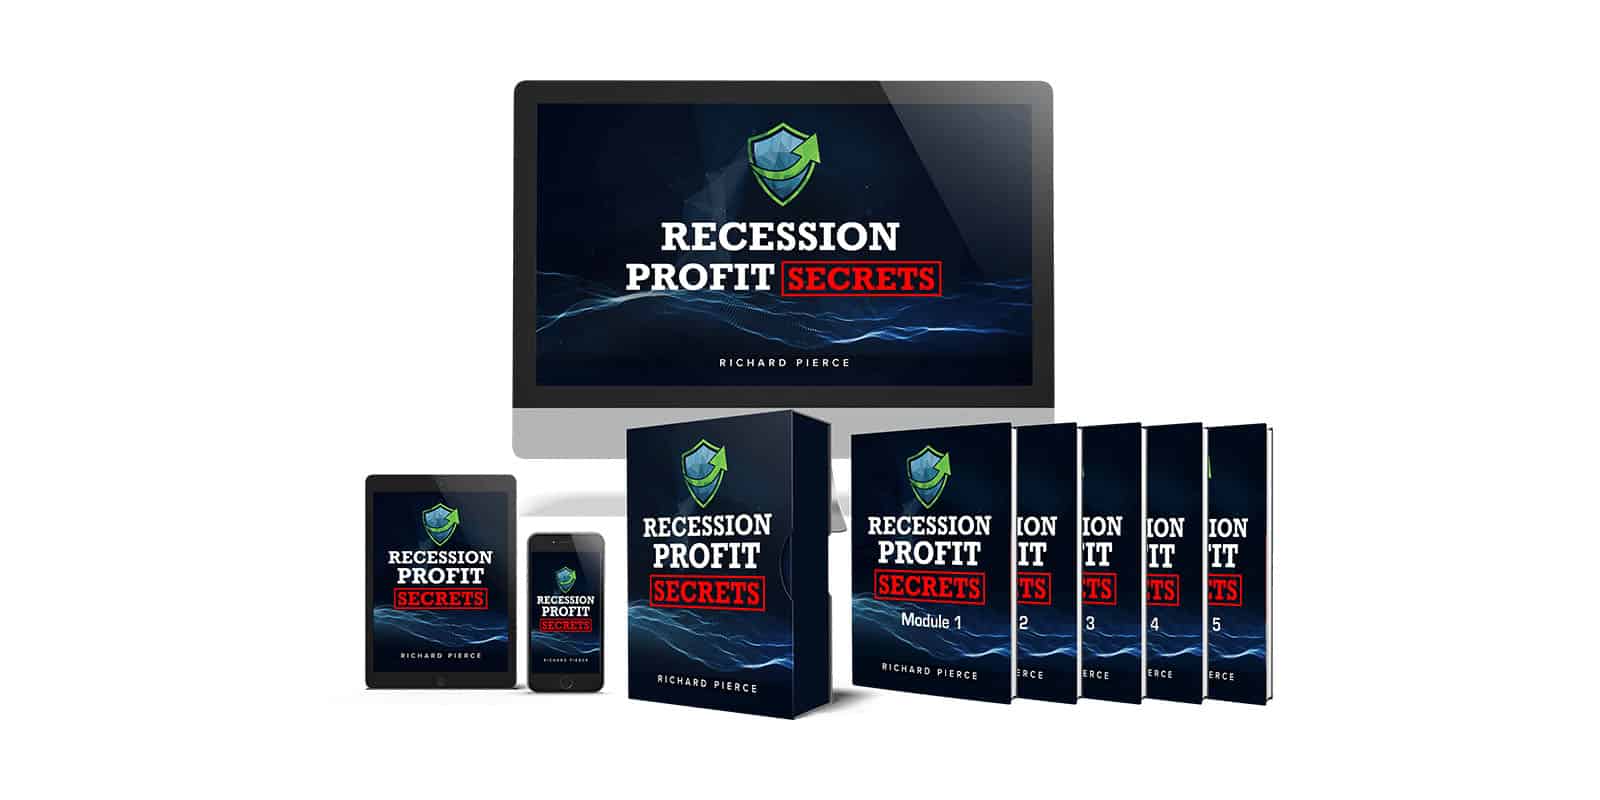 Recession-Profit-Secrets-Reviews